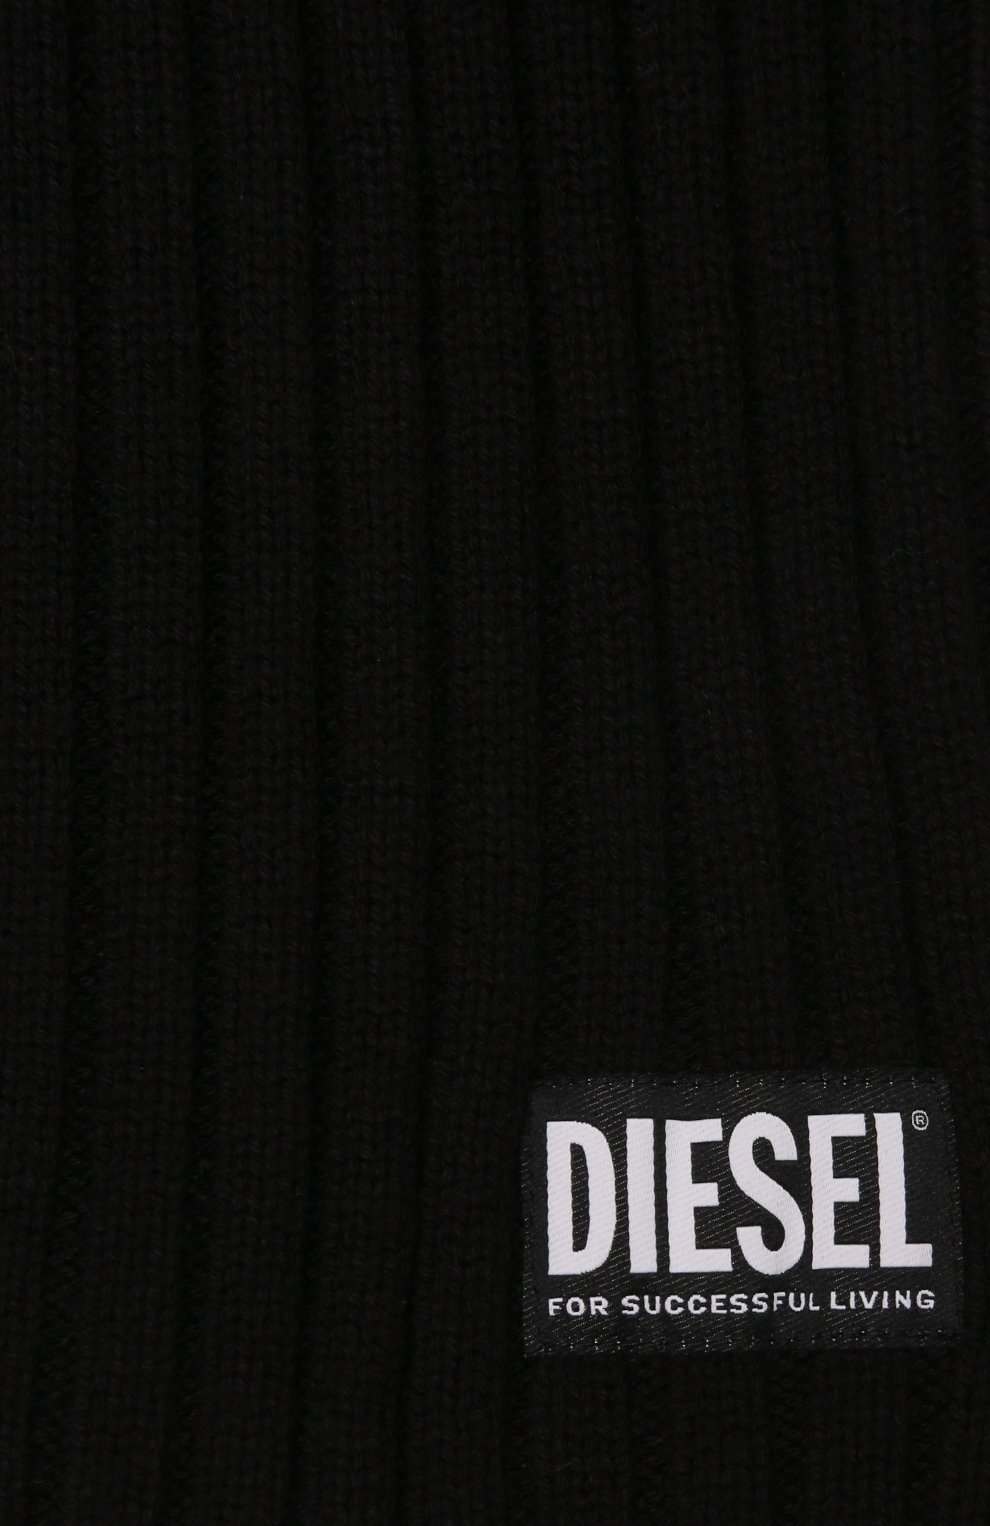 Детский шарф-снуд из шерсти и хлопка DIESEL черного цвета, арт. J00221-KYASM | Фото 3 (Материал: Текстиль, Шерсть, Хлопок)